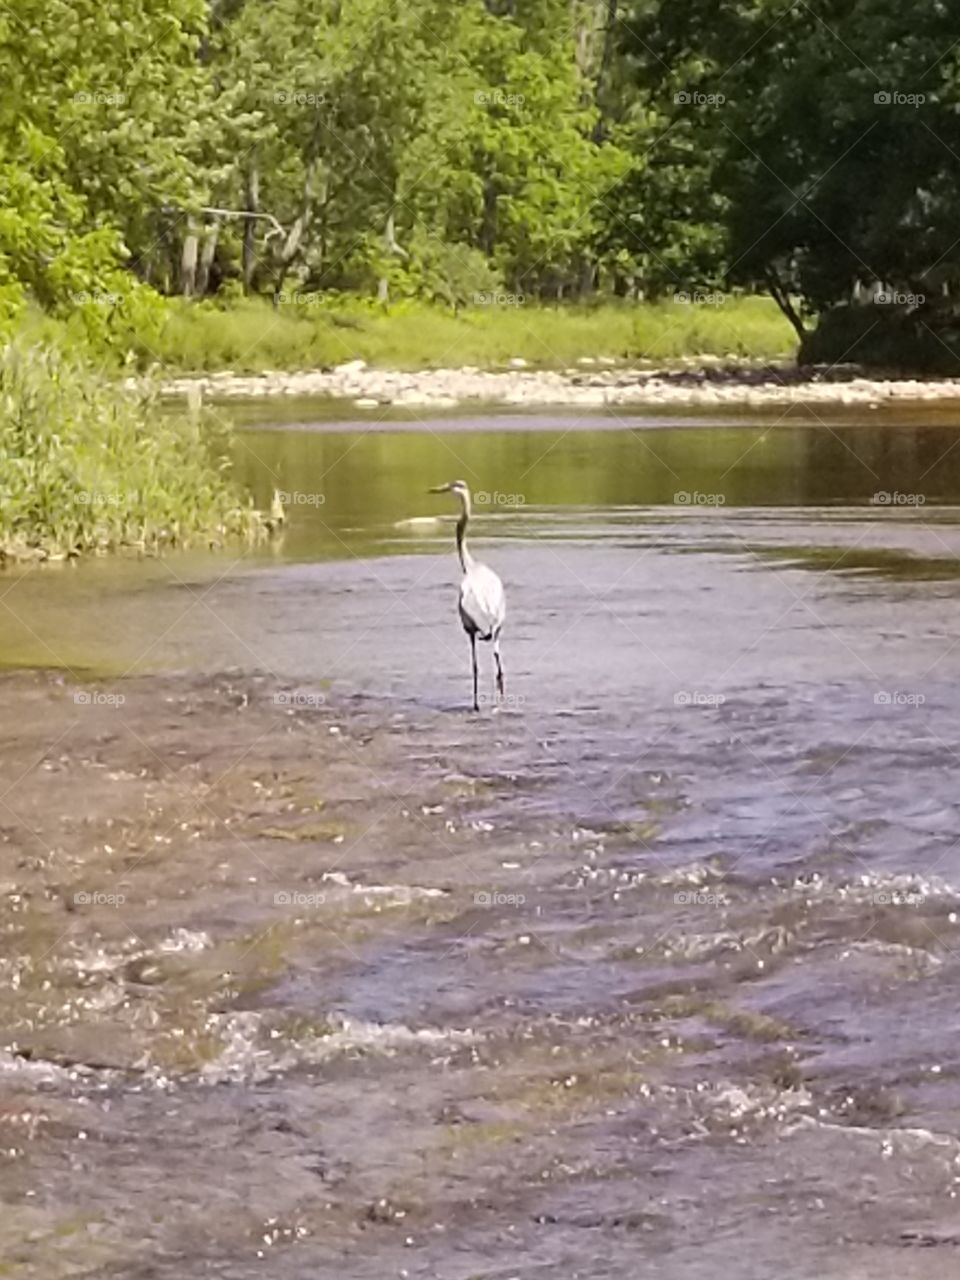 Herron on the creek